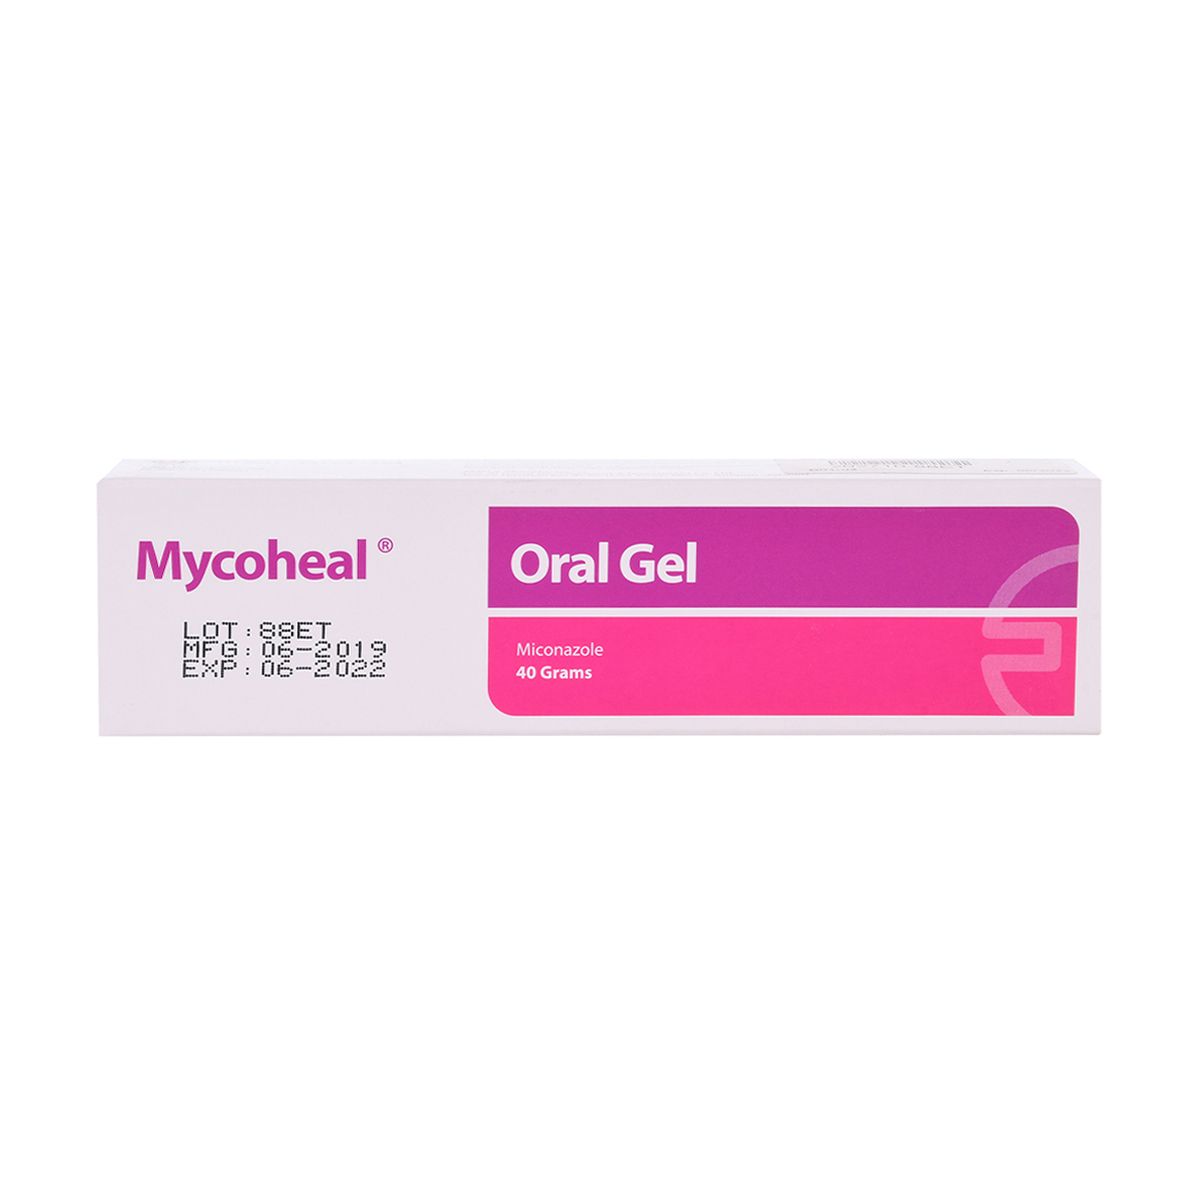 Mycoheal Gel Oral 40Gm